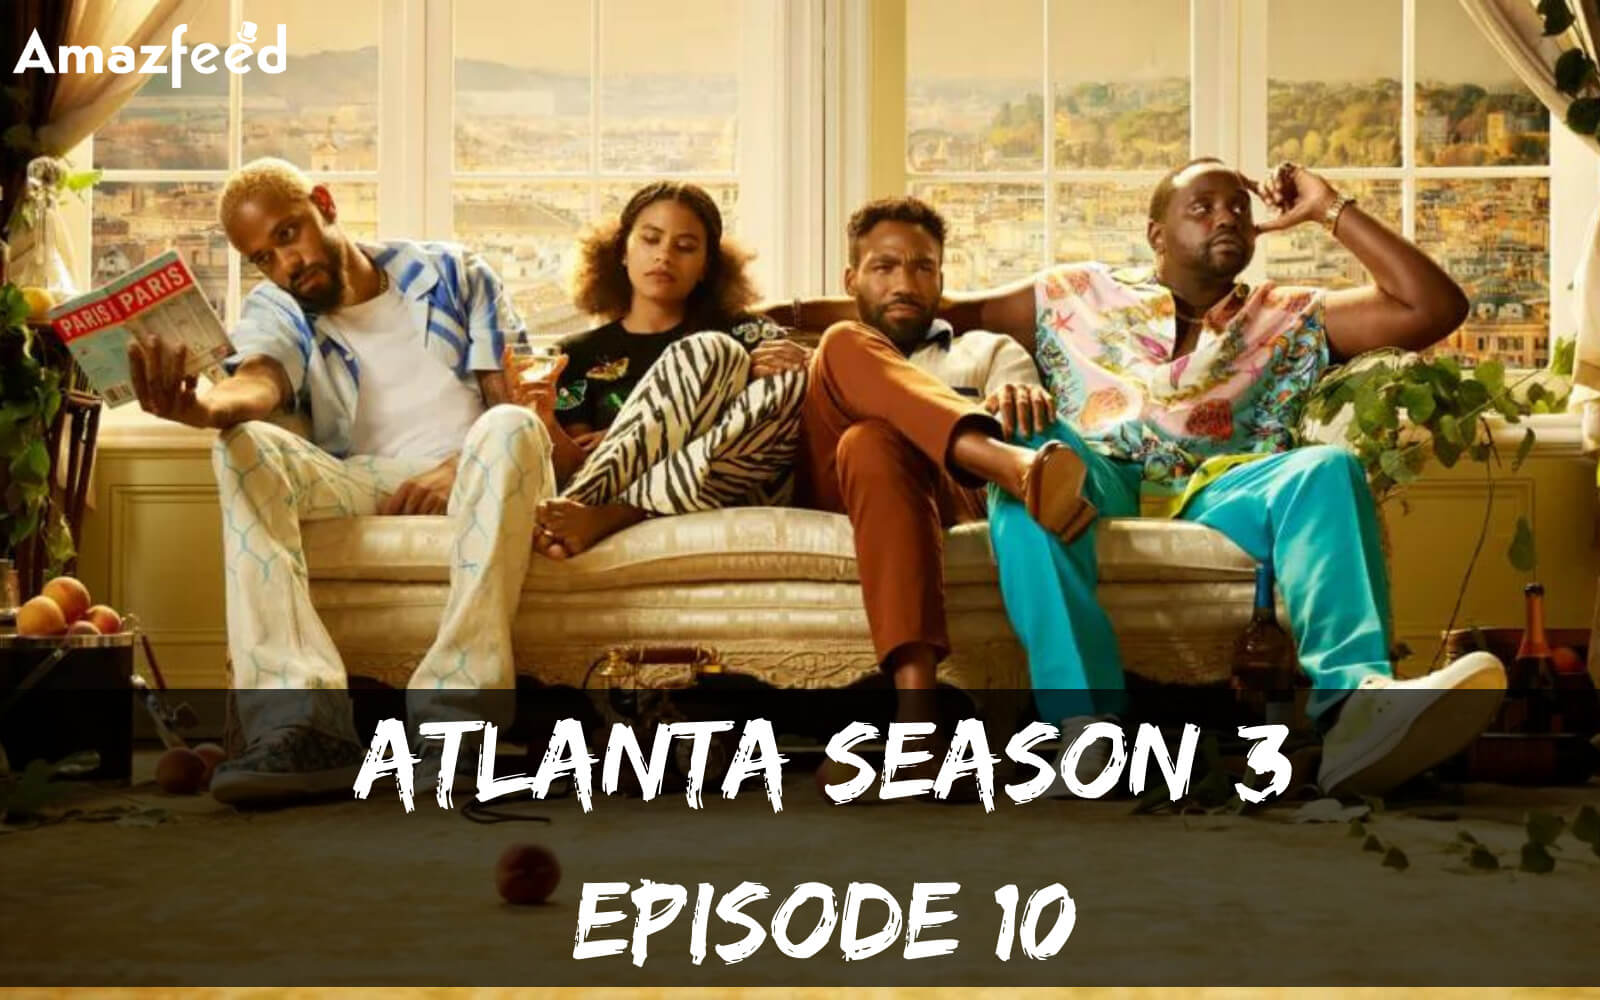 Atlanta Season 3 Episode 10 release date